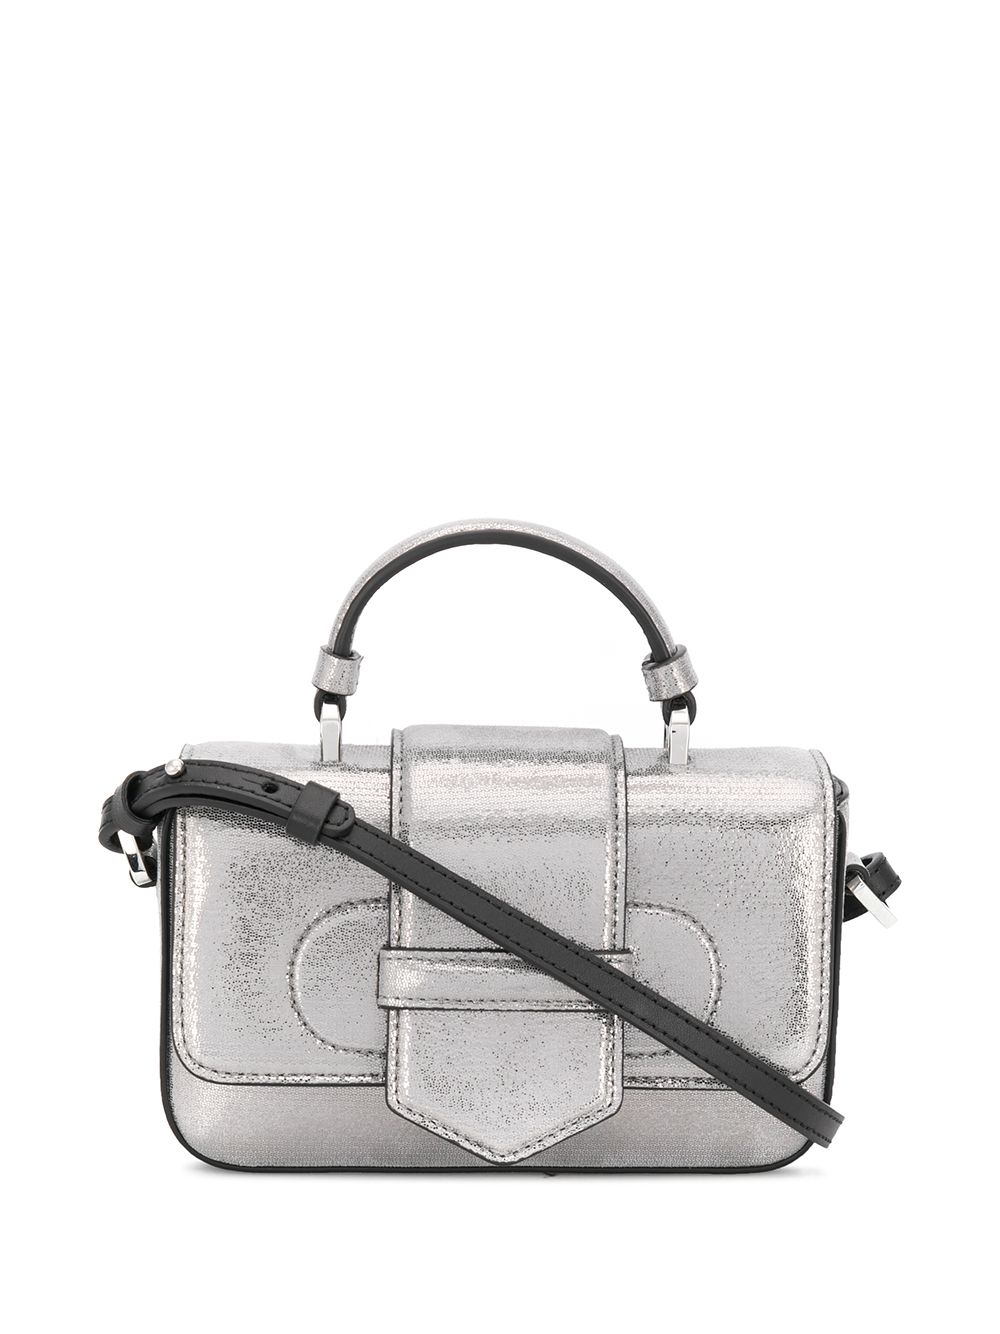 Emporio Armani Small Metallic Cross Body Bag In Silver | ModeSens